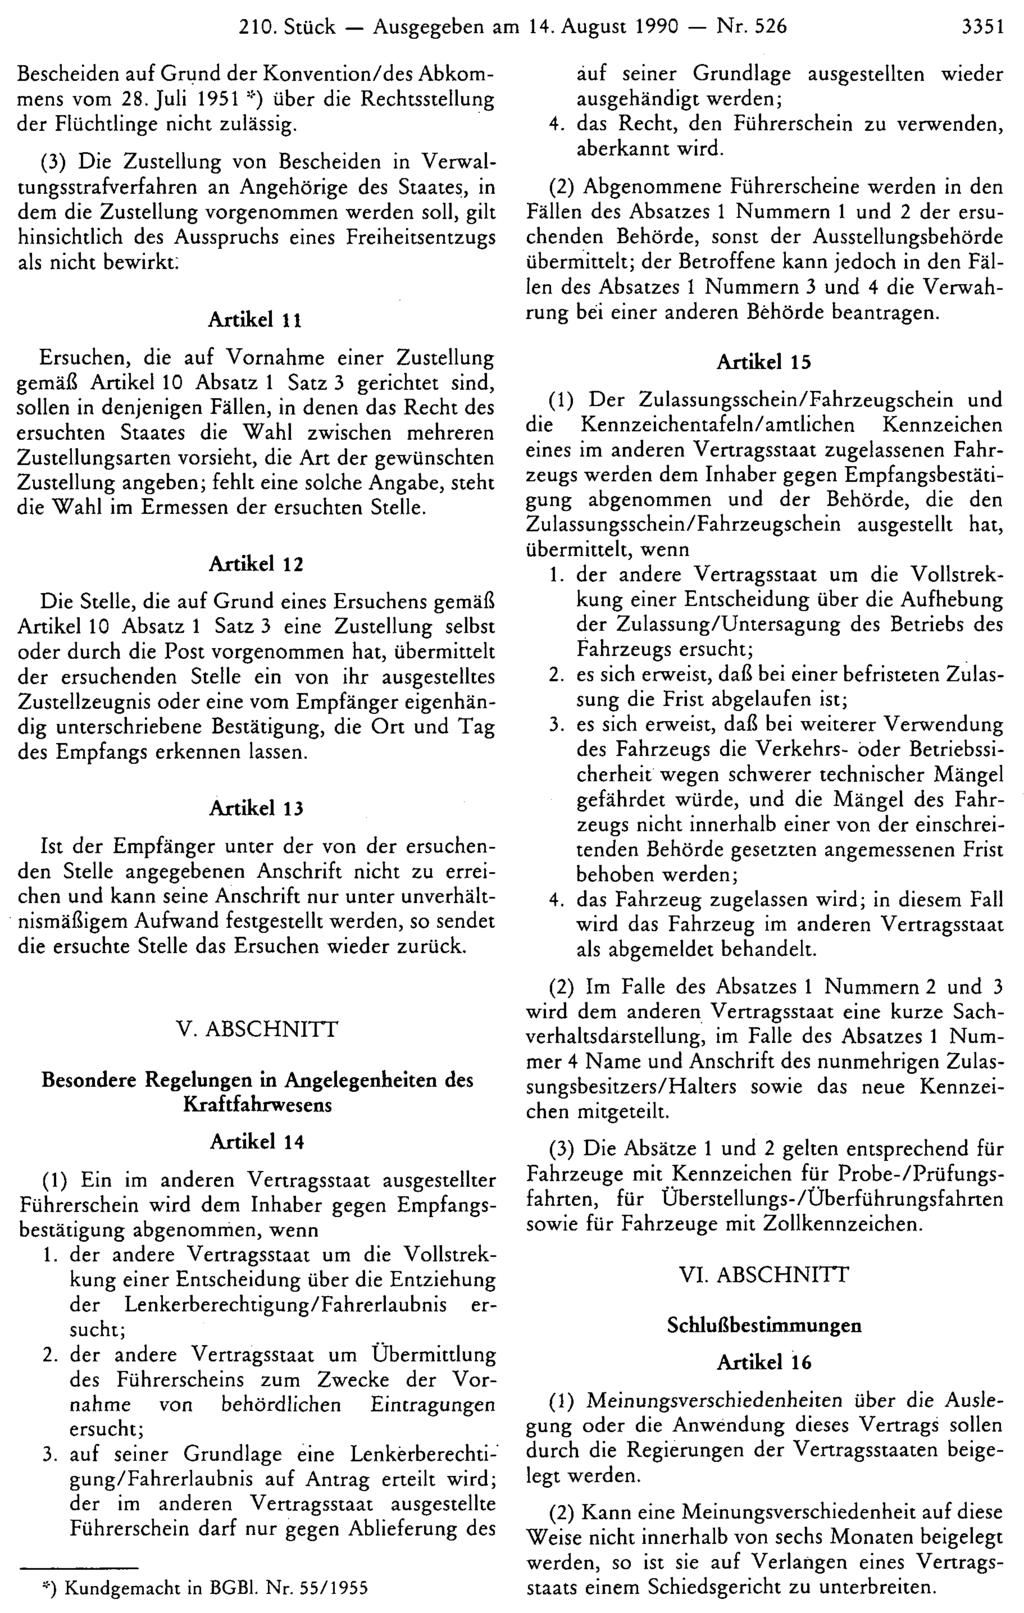 210. Stück Ausgegeben am 14. August 1990 Nr. 526 3351 Bescheiden auf Grund der Konvention/des Abkommens vom 28. Juli 1951 *) über die Rechtsstellung der Flüchtlinge nicht zulässig.